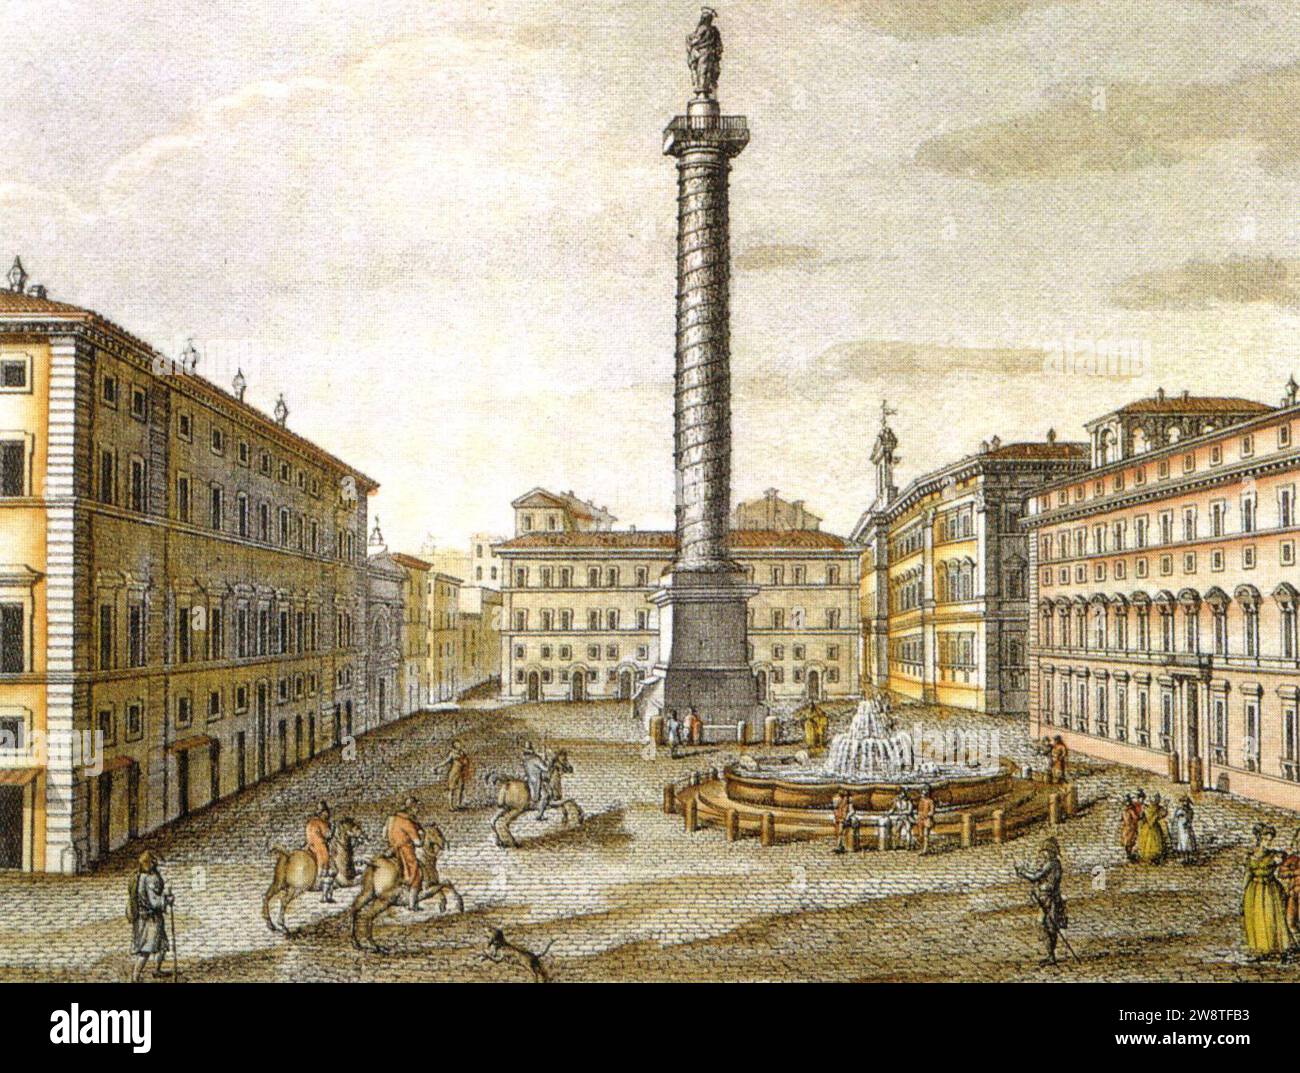 Druck aus dem 19. Jahrhundert, Piazza colonna, roma. Stockfoto